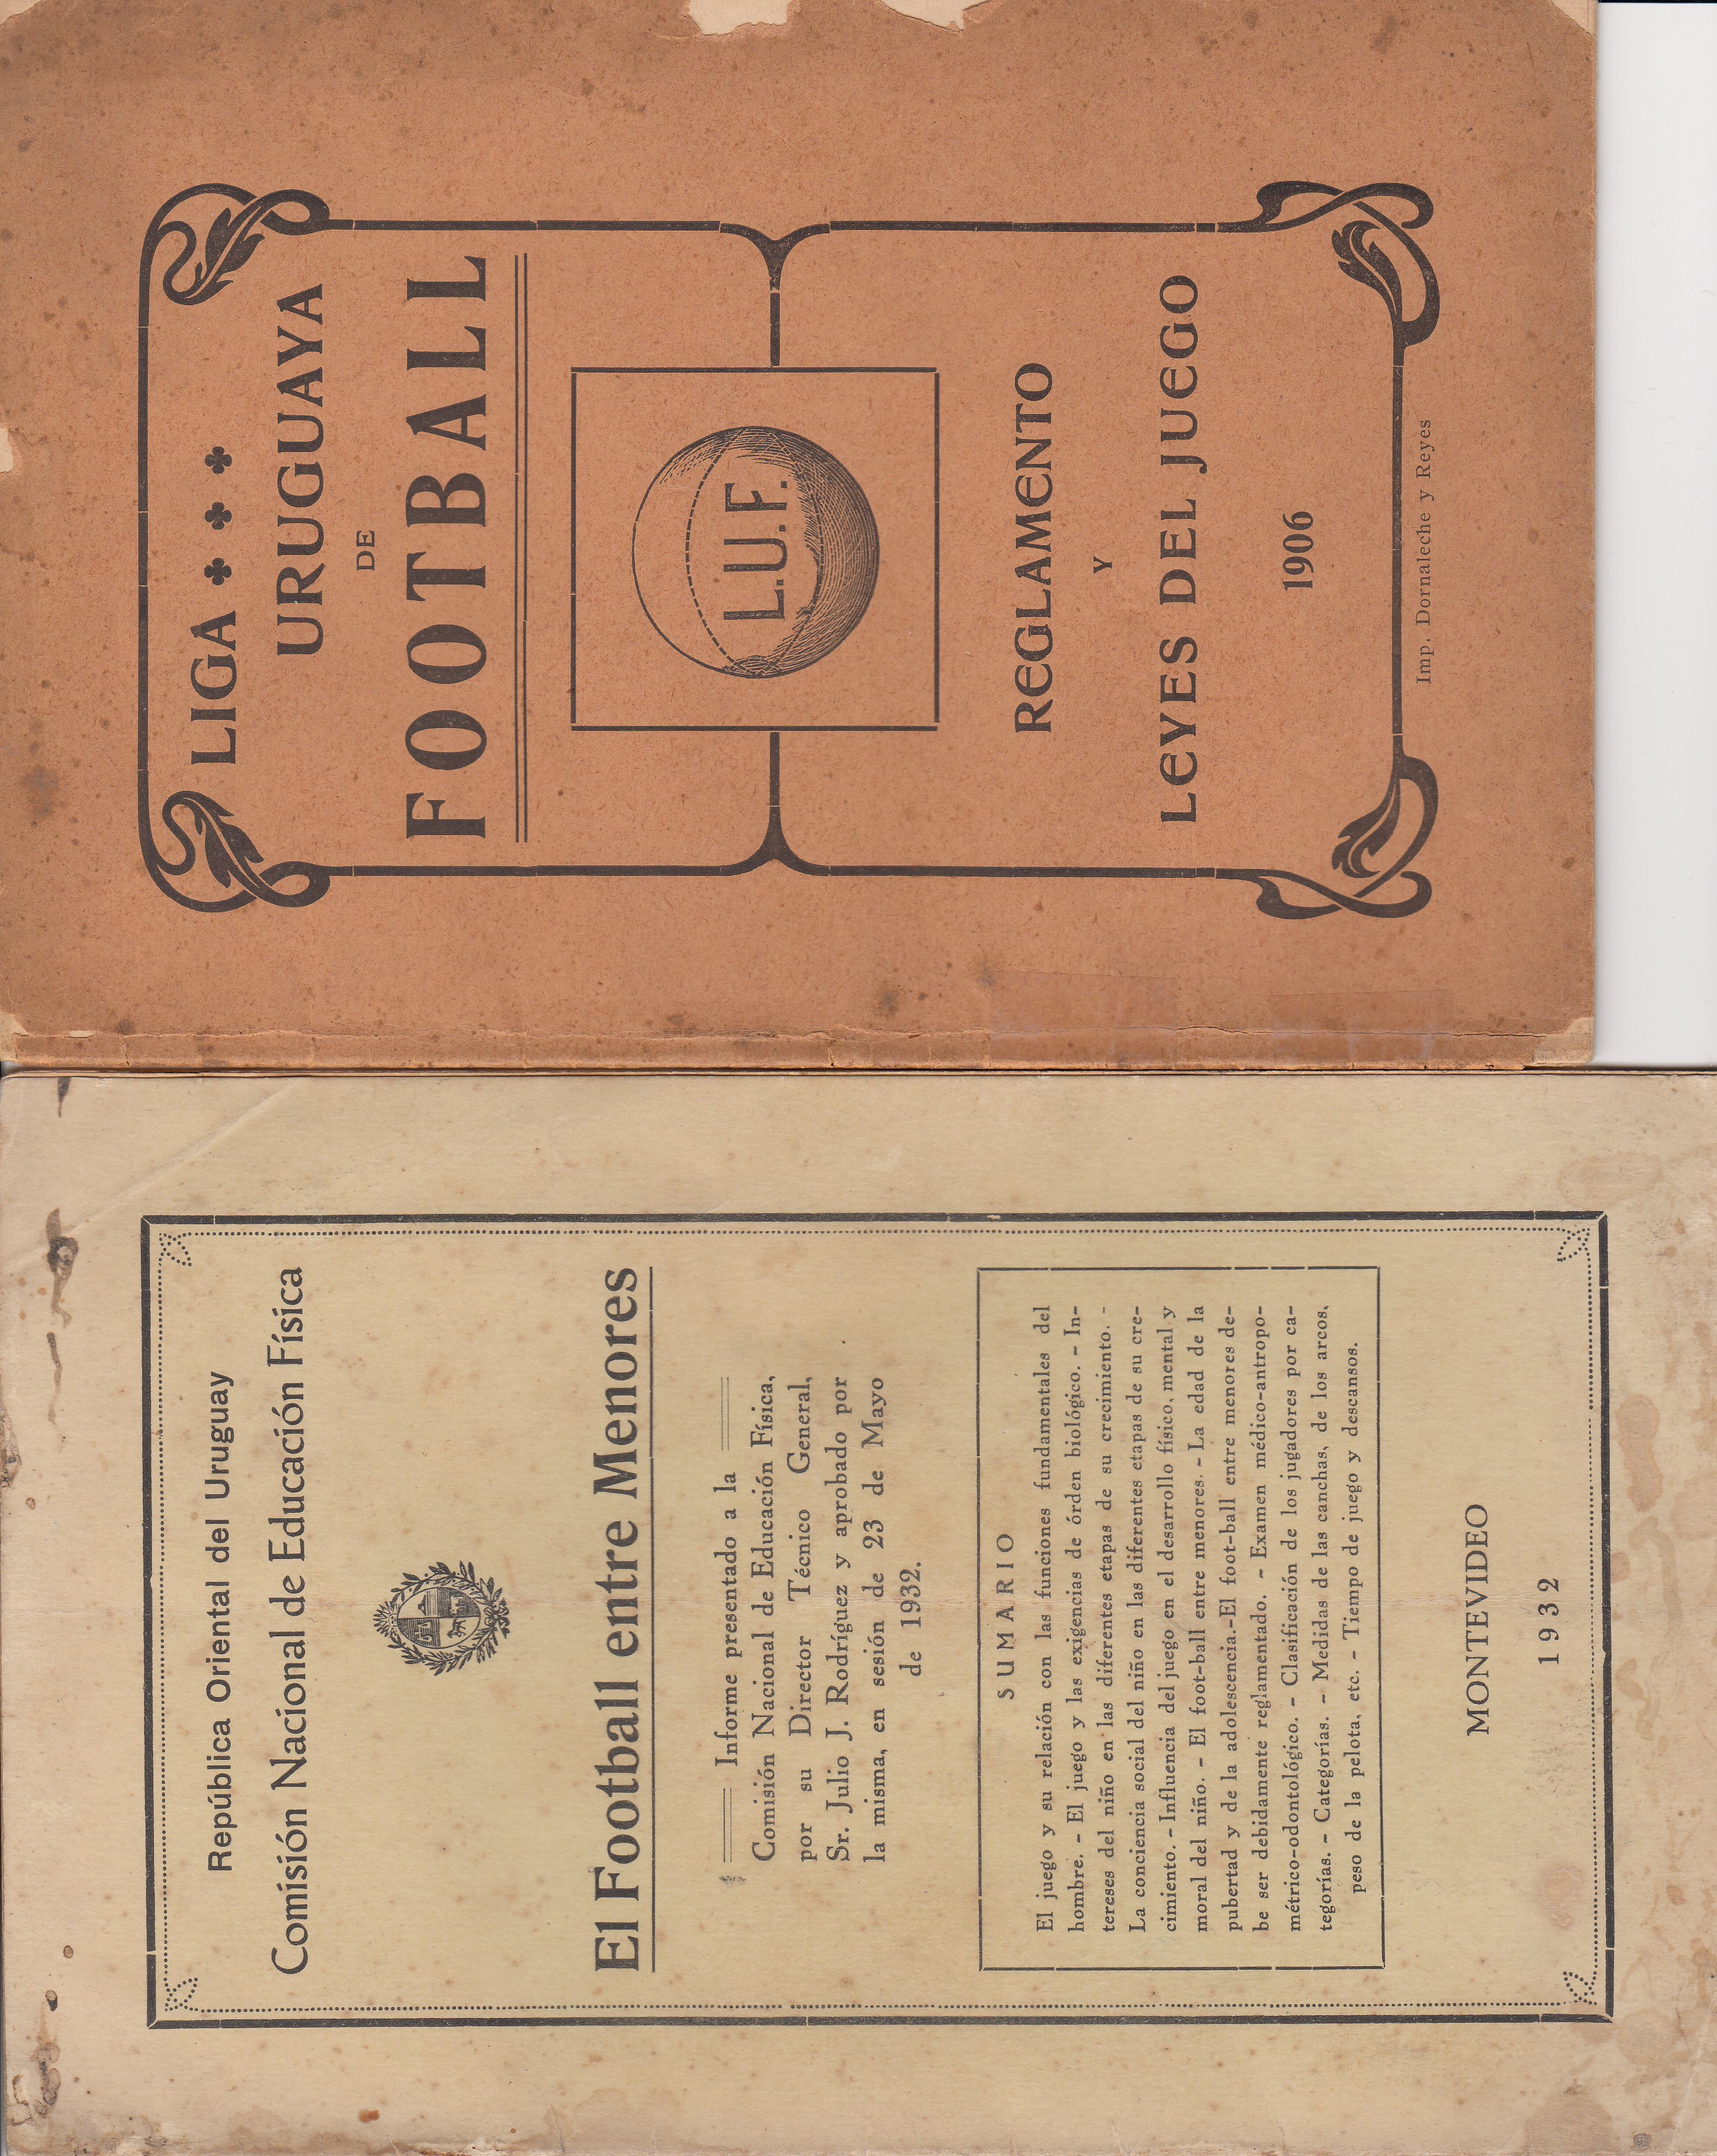 URUGUAY FOOTBALL 1906 Scarce booklet Liga Uruguaya de Football, Reglamento y Leyes del Juego 1906.